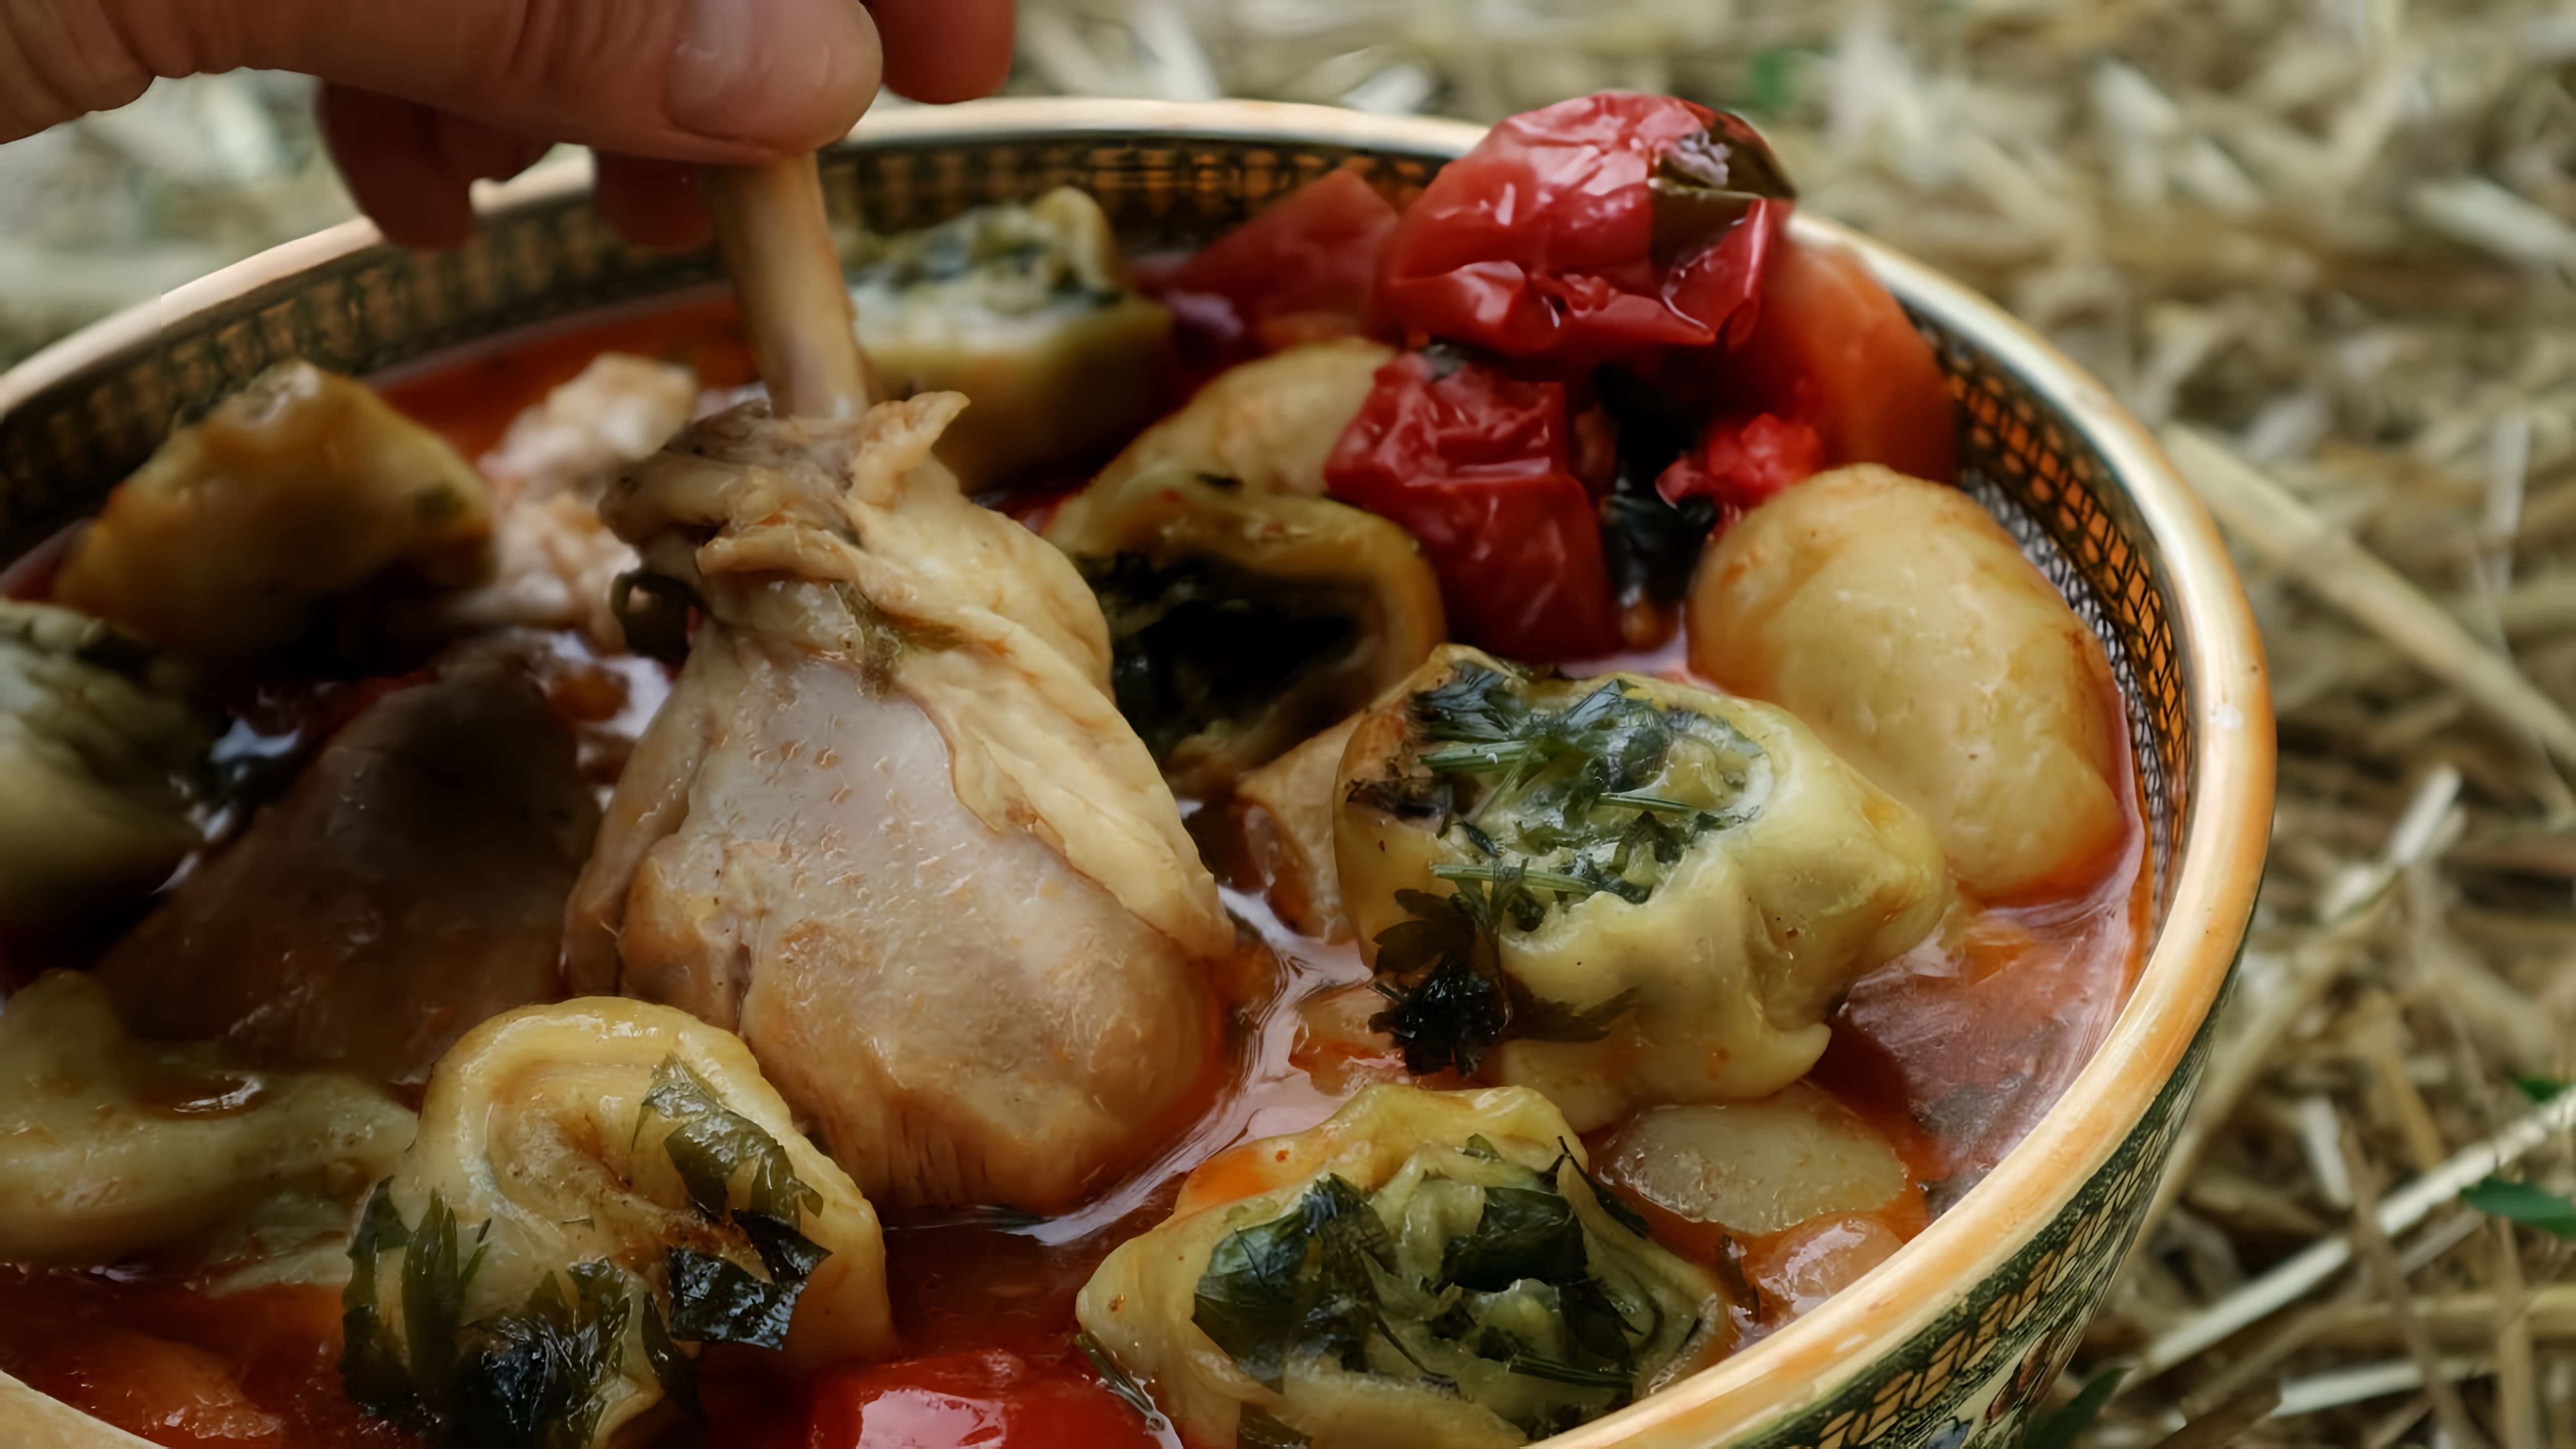 Шурпа из курицы на костре - это вкусное и ароматное блюдо, которое можно приготовить на природе